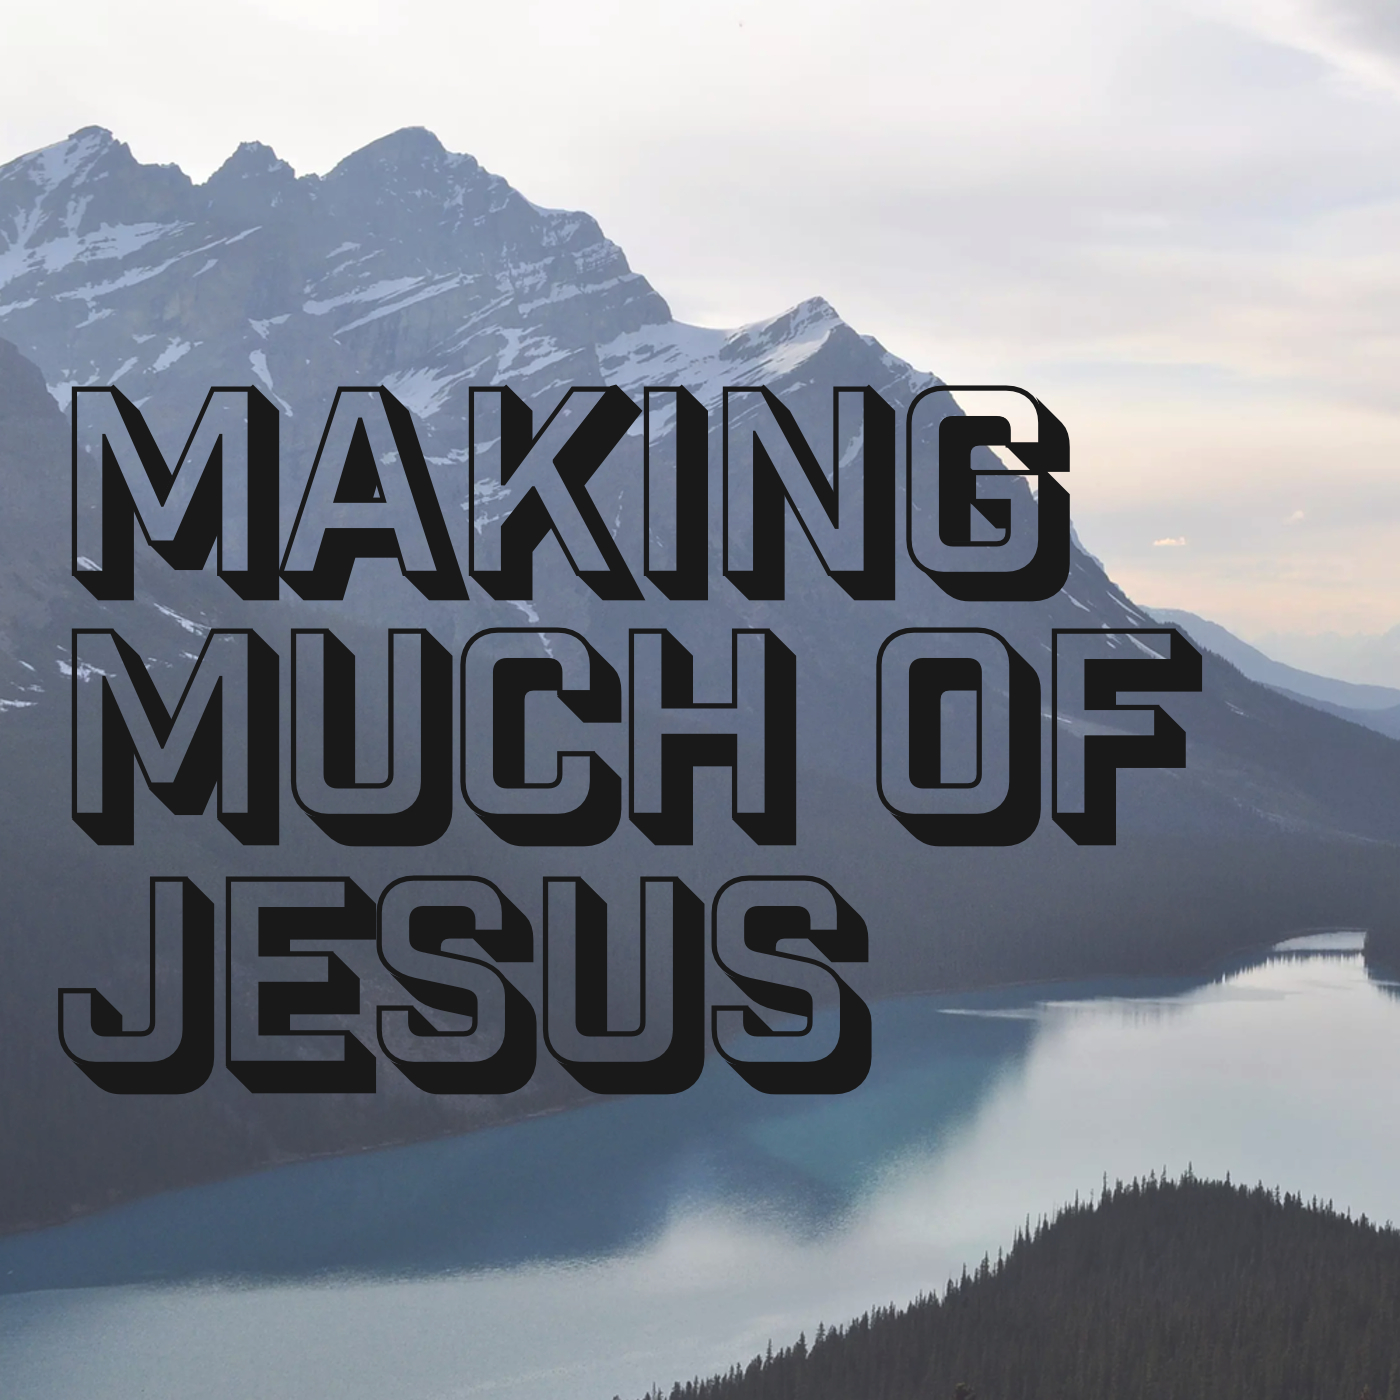 Making Much of Jesus